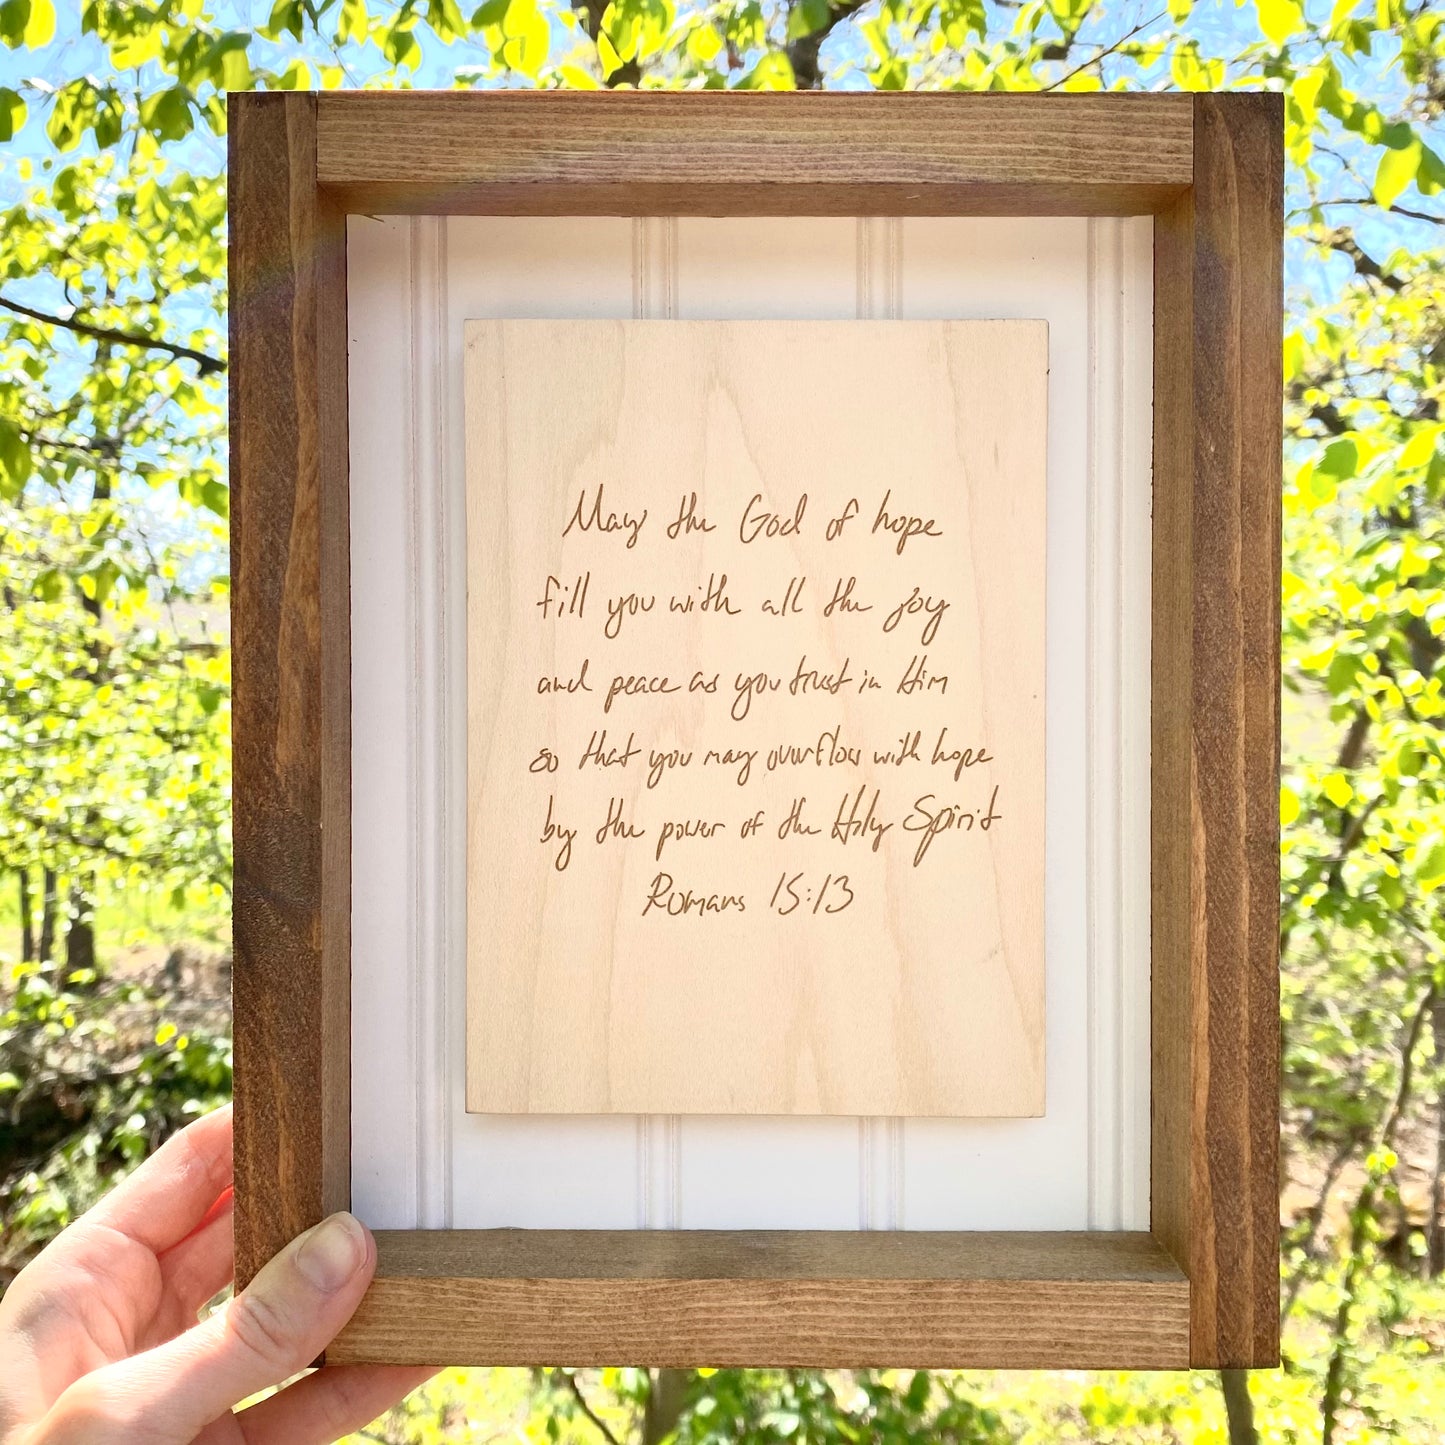 Framed Handwritten Wood Card